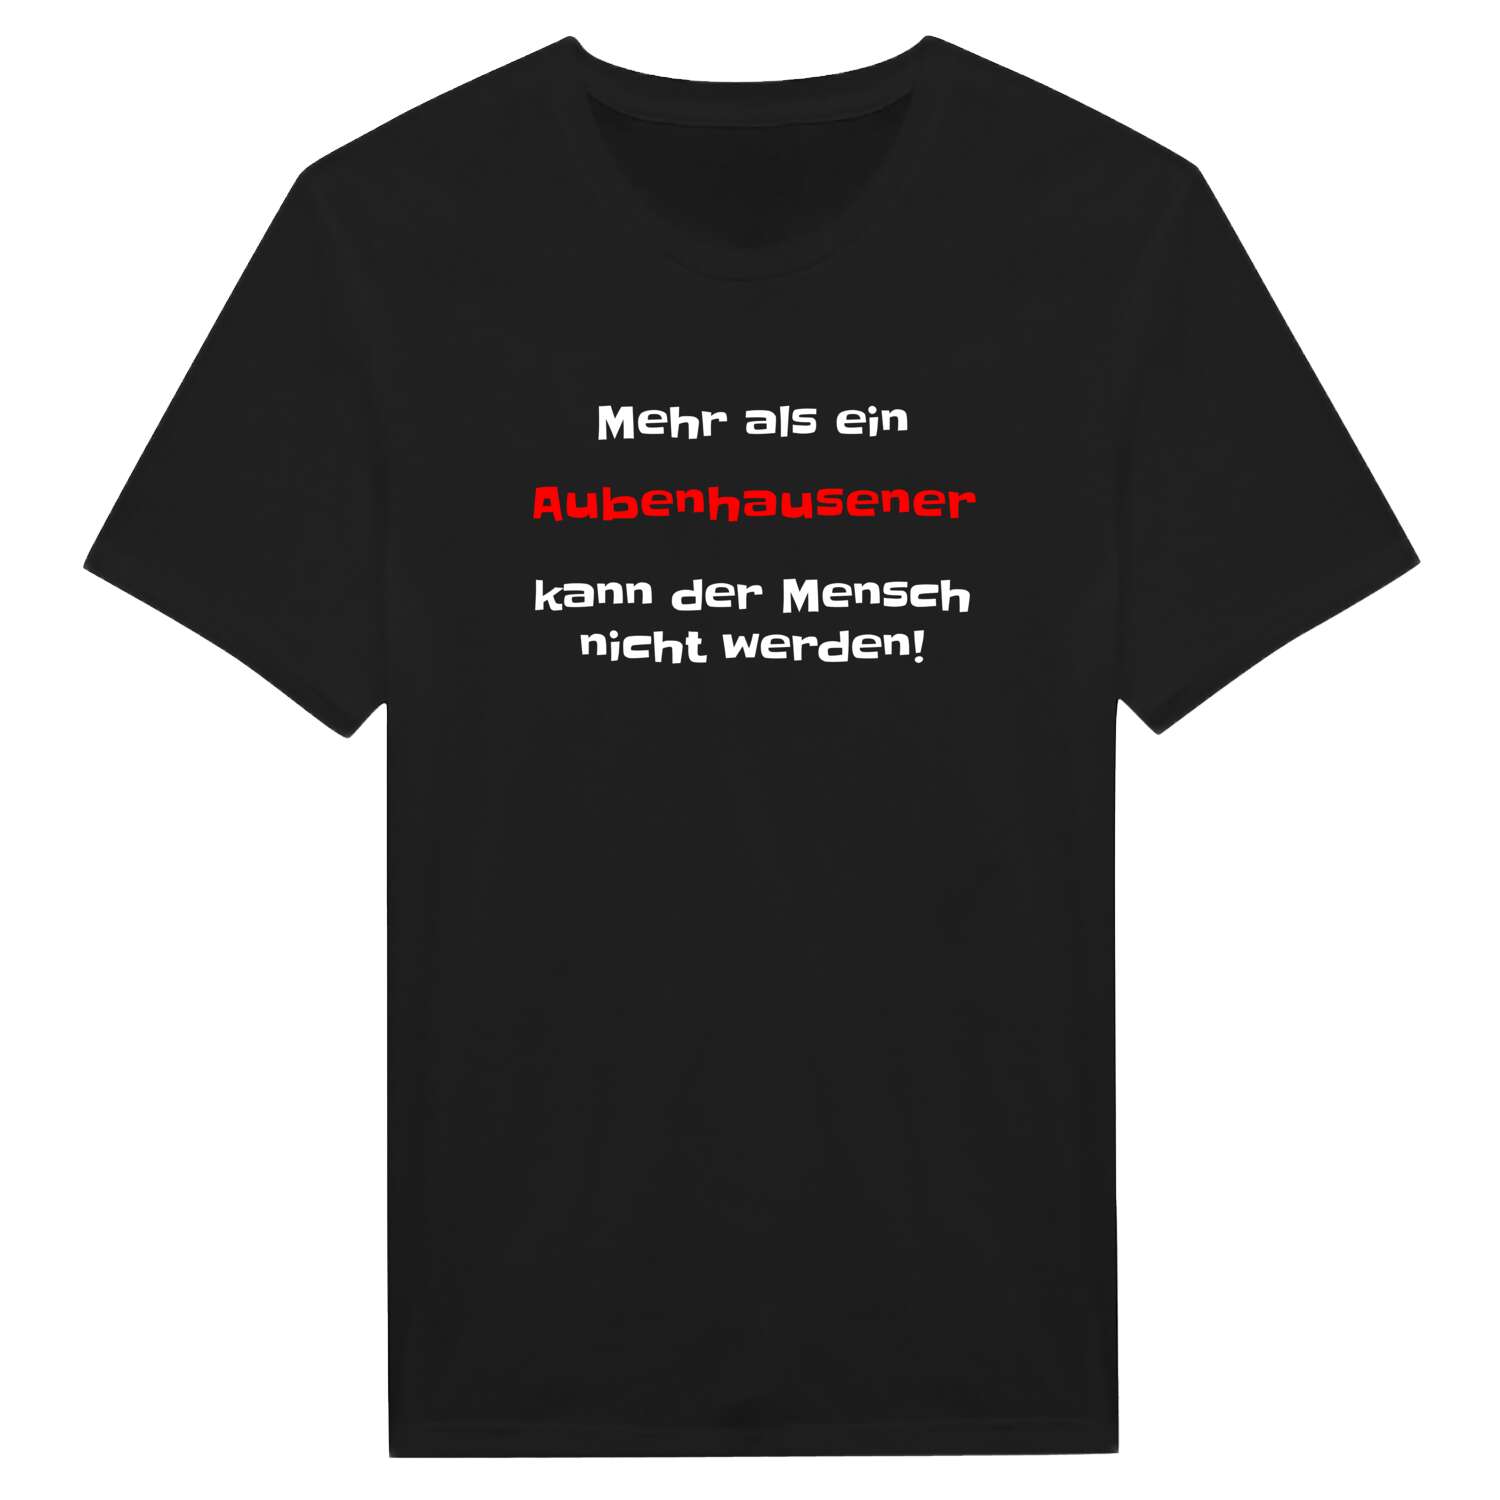 Aubenhausen T-Shirt »Mehr als ein«